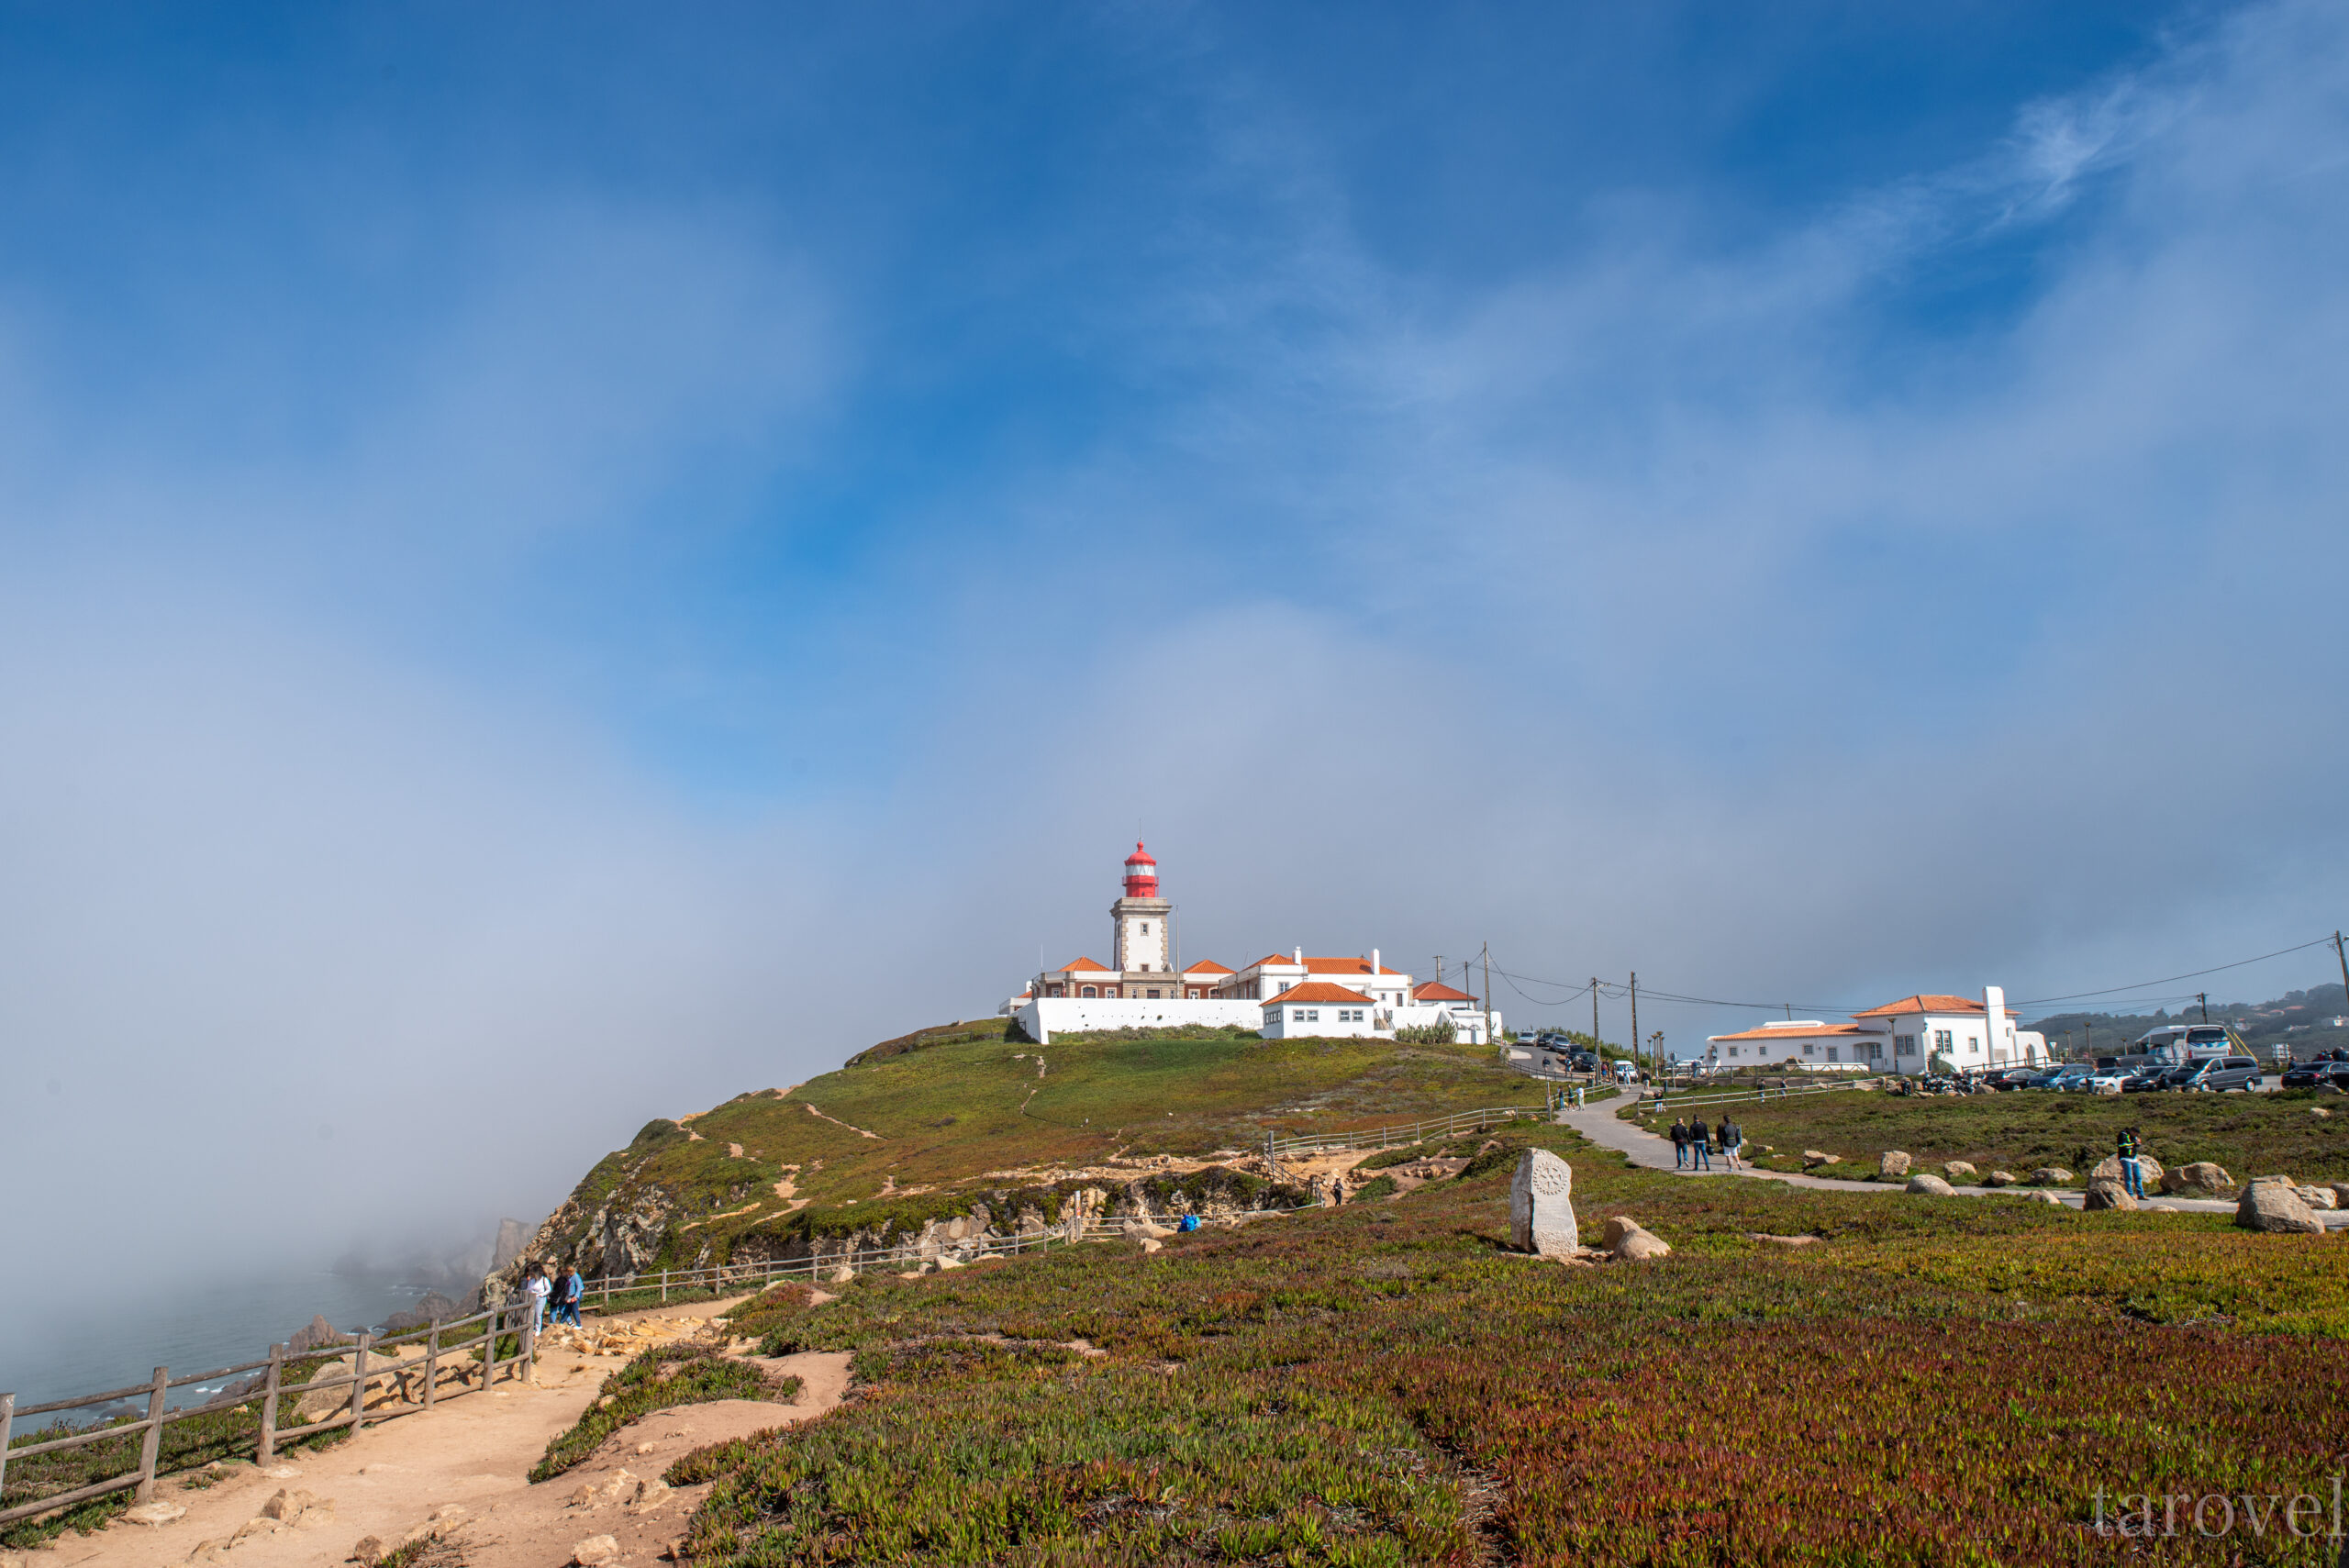 ポルトガルのロカ岬での旅行費用について